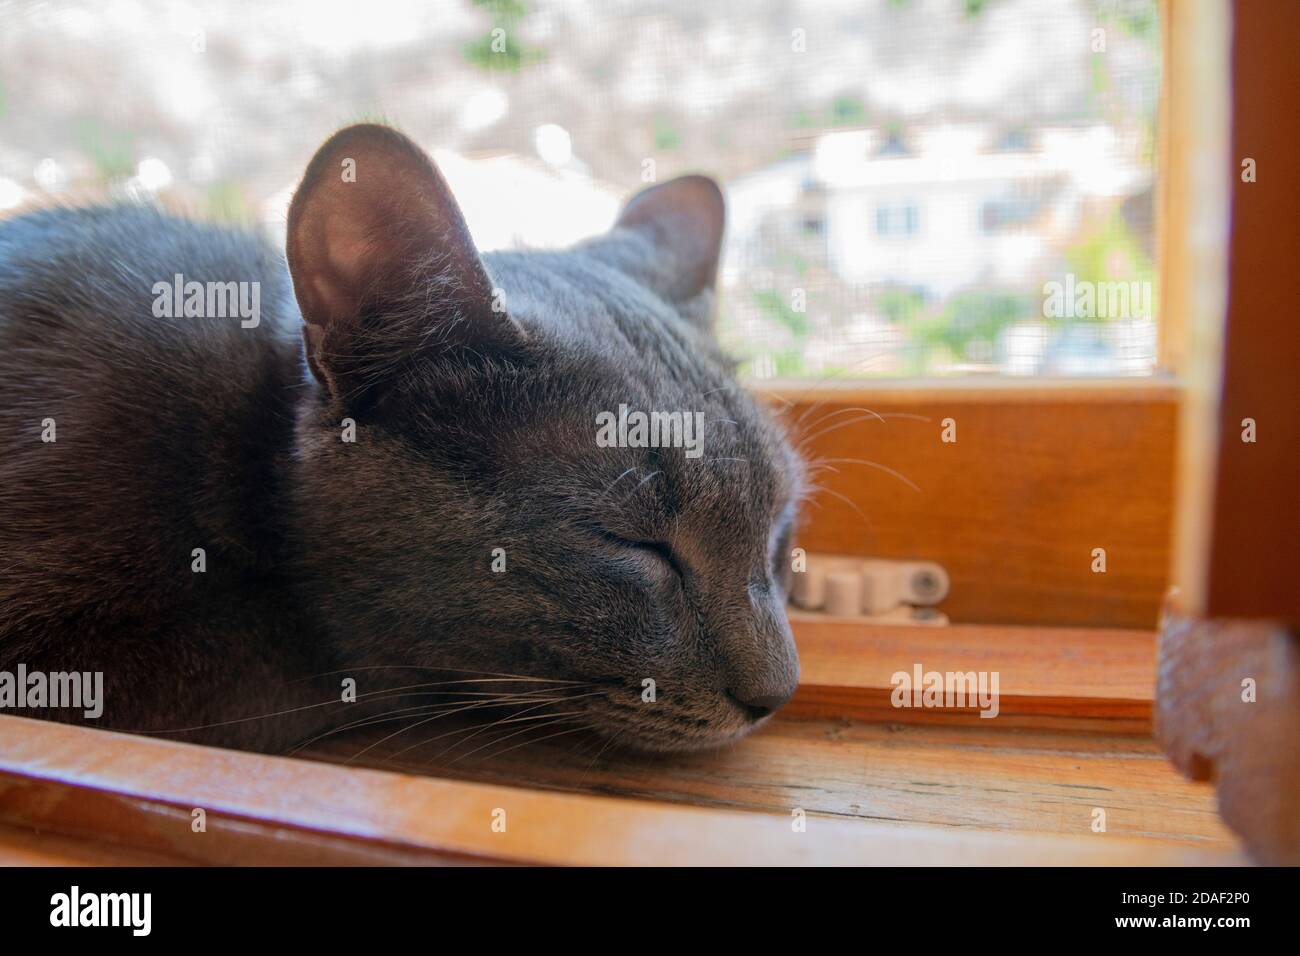 Gros plan sur la tête d'un chat gris dormant à l'intérieur d'un rebord de fenêtre en bois par une journée ensoleillée. Elle a l'air très paisible et adorable avec sa fourrure moelleuse. Banque D'Images